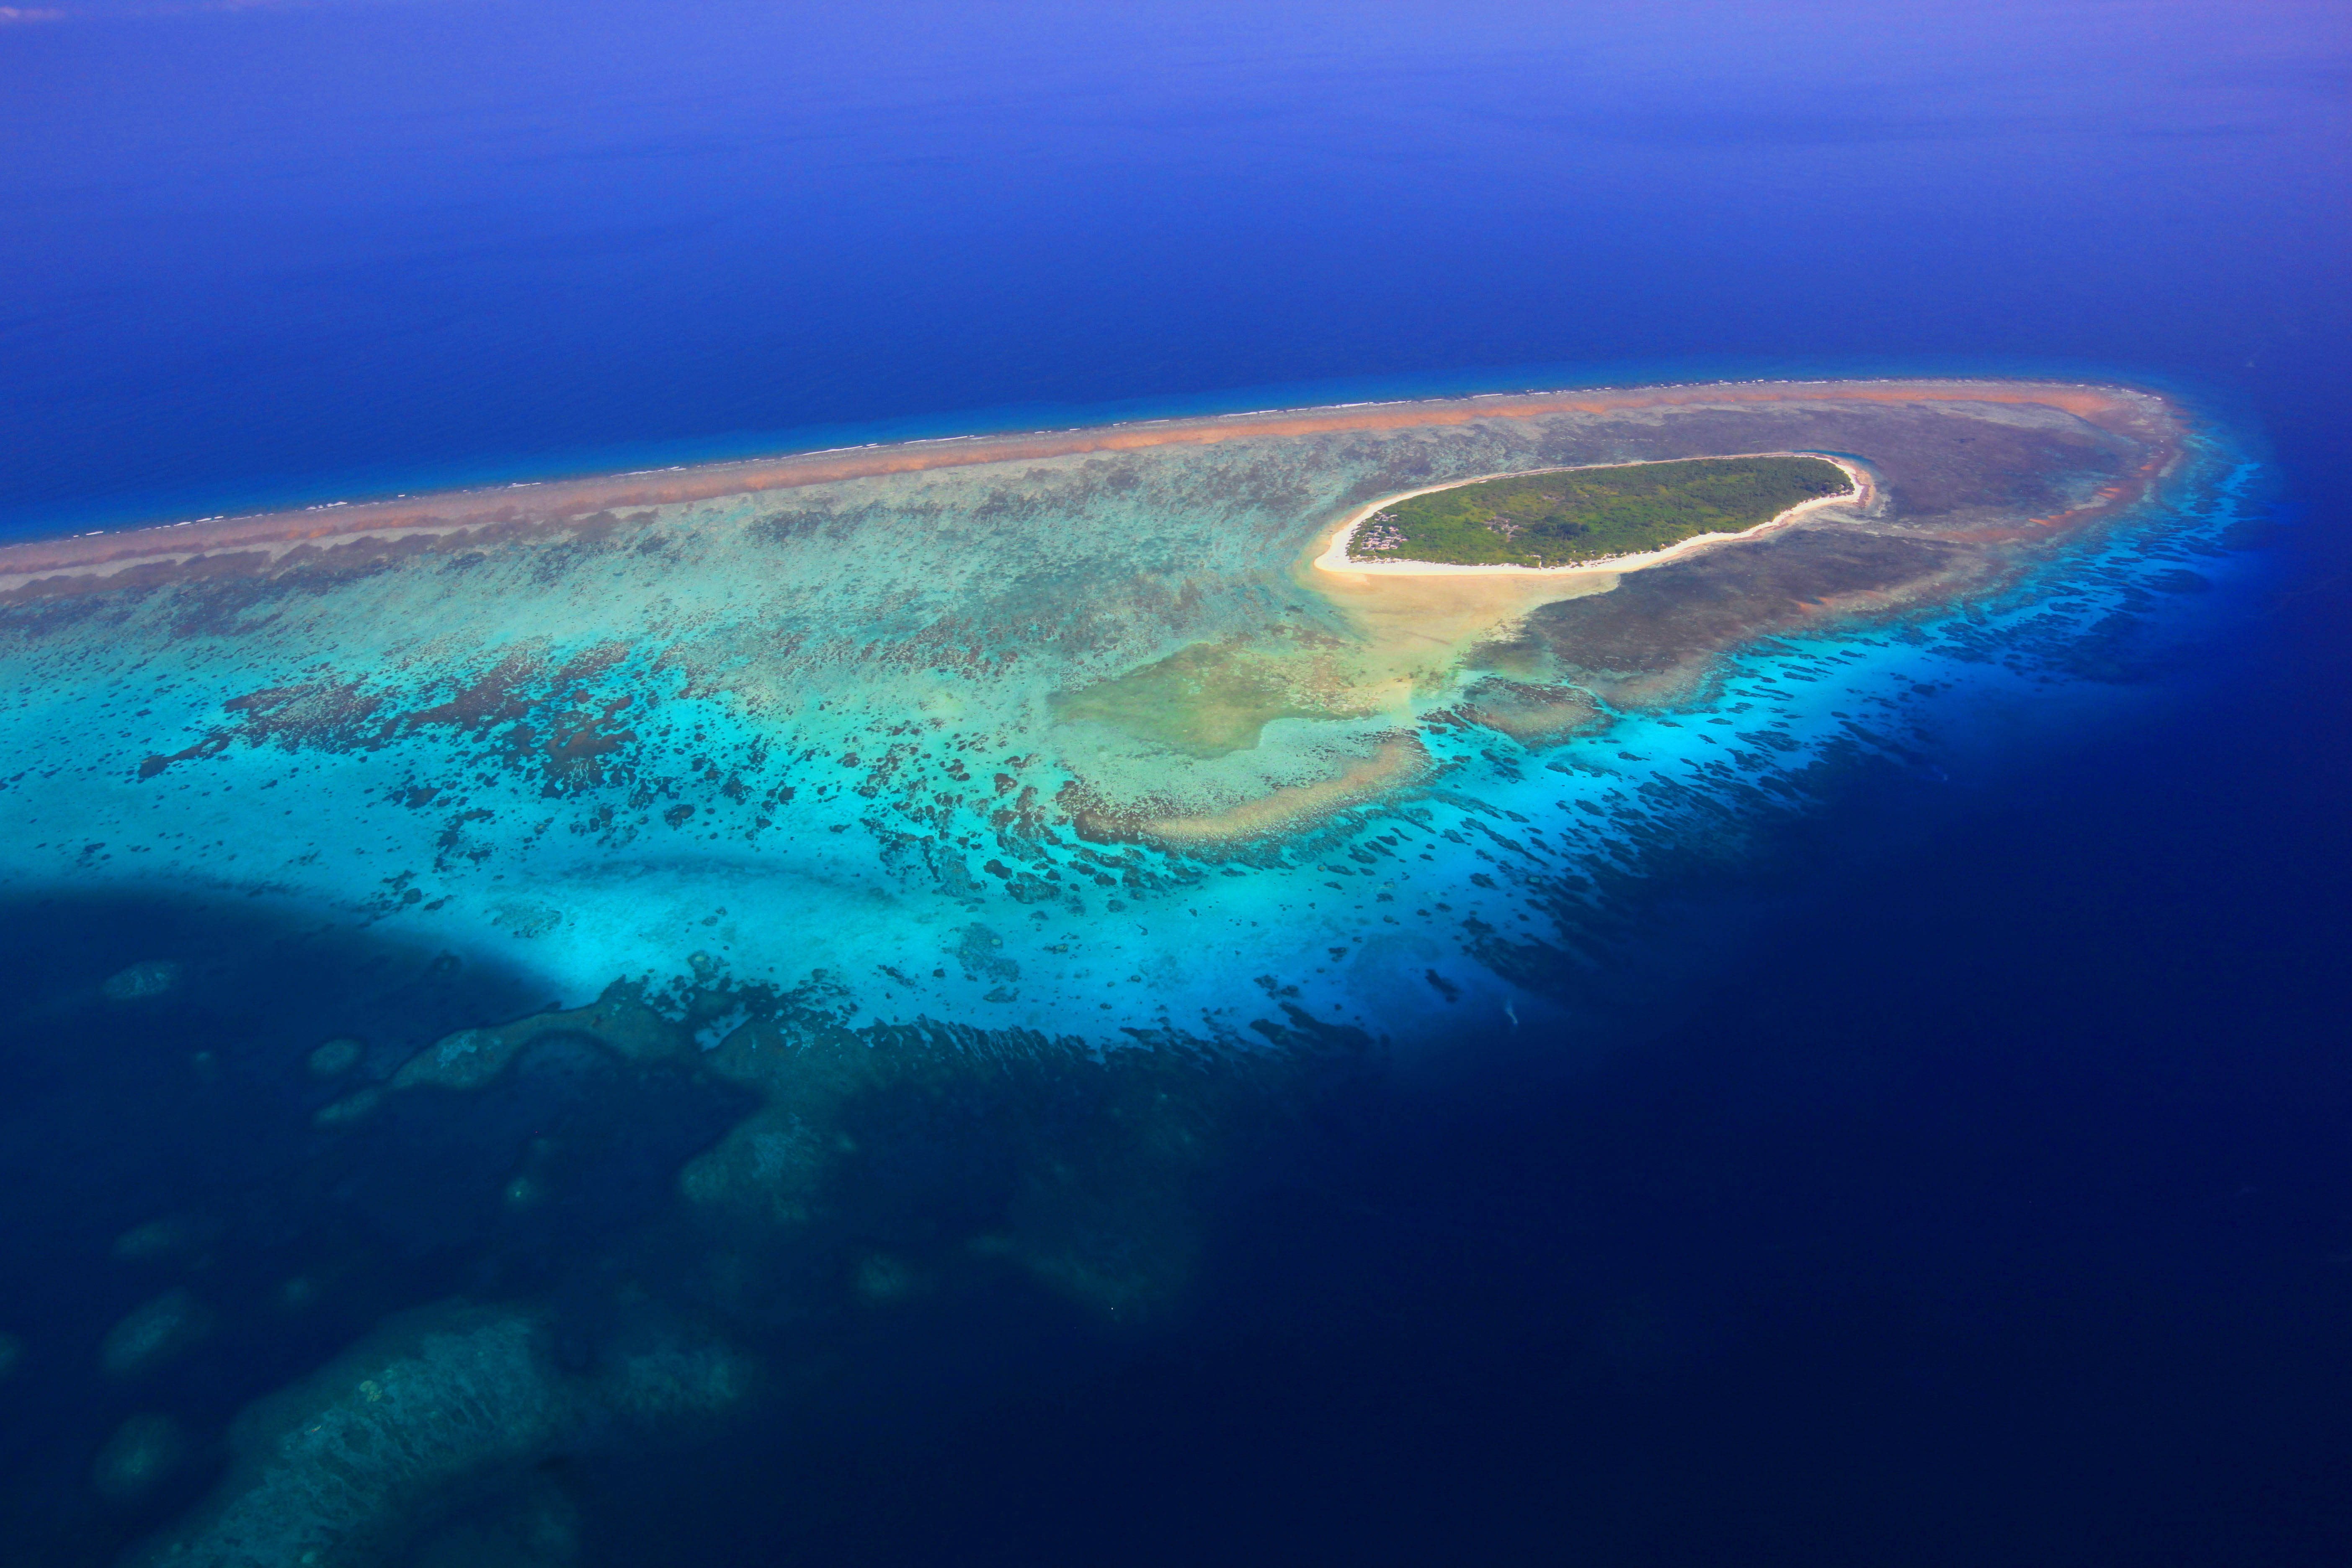 在南沙群岛的众多岛礁中,南薰礁的气候最为恶劣